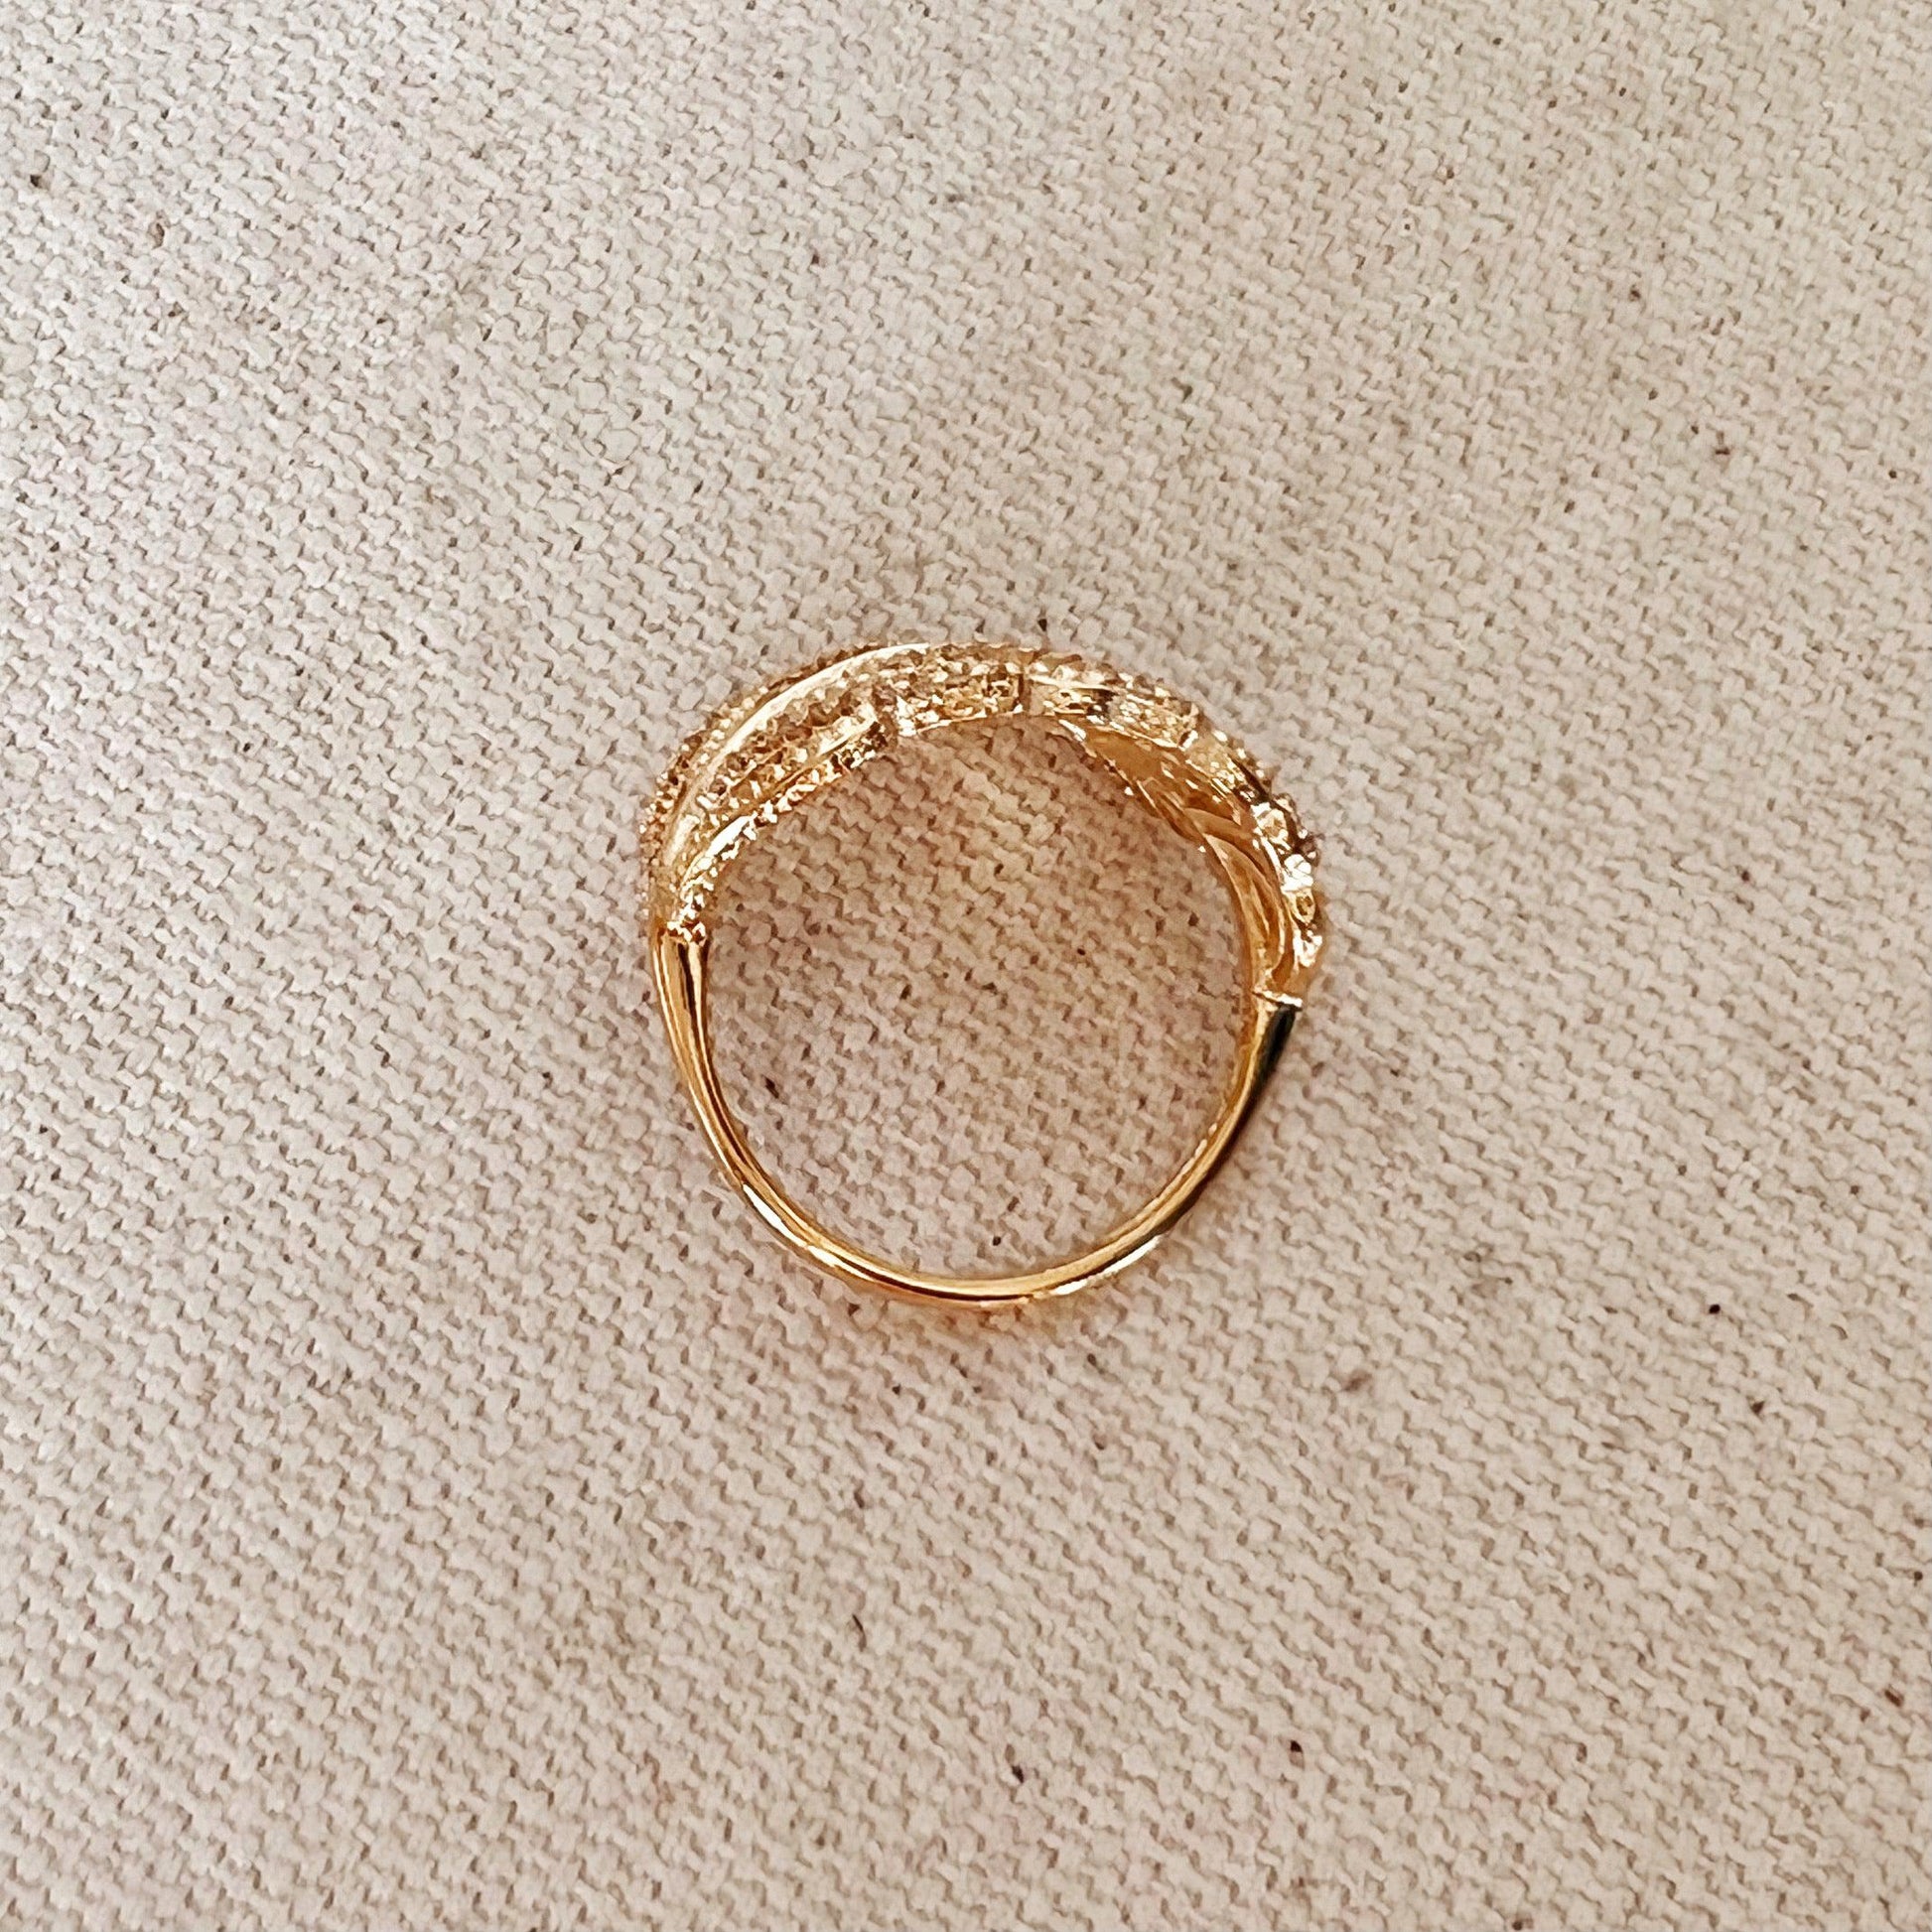 GoldFi 18k Gold Filled Statement Leaf Ring